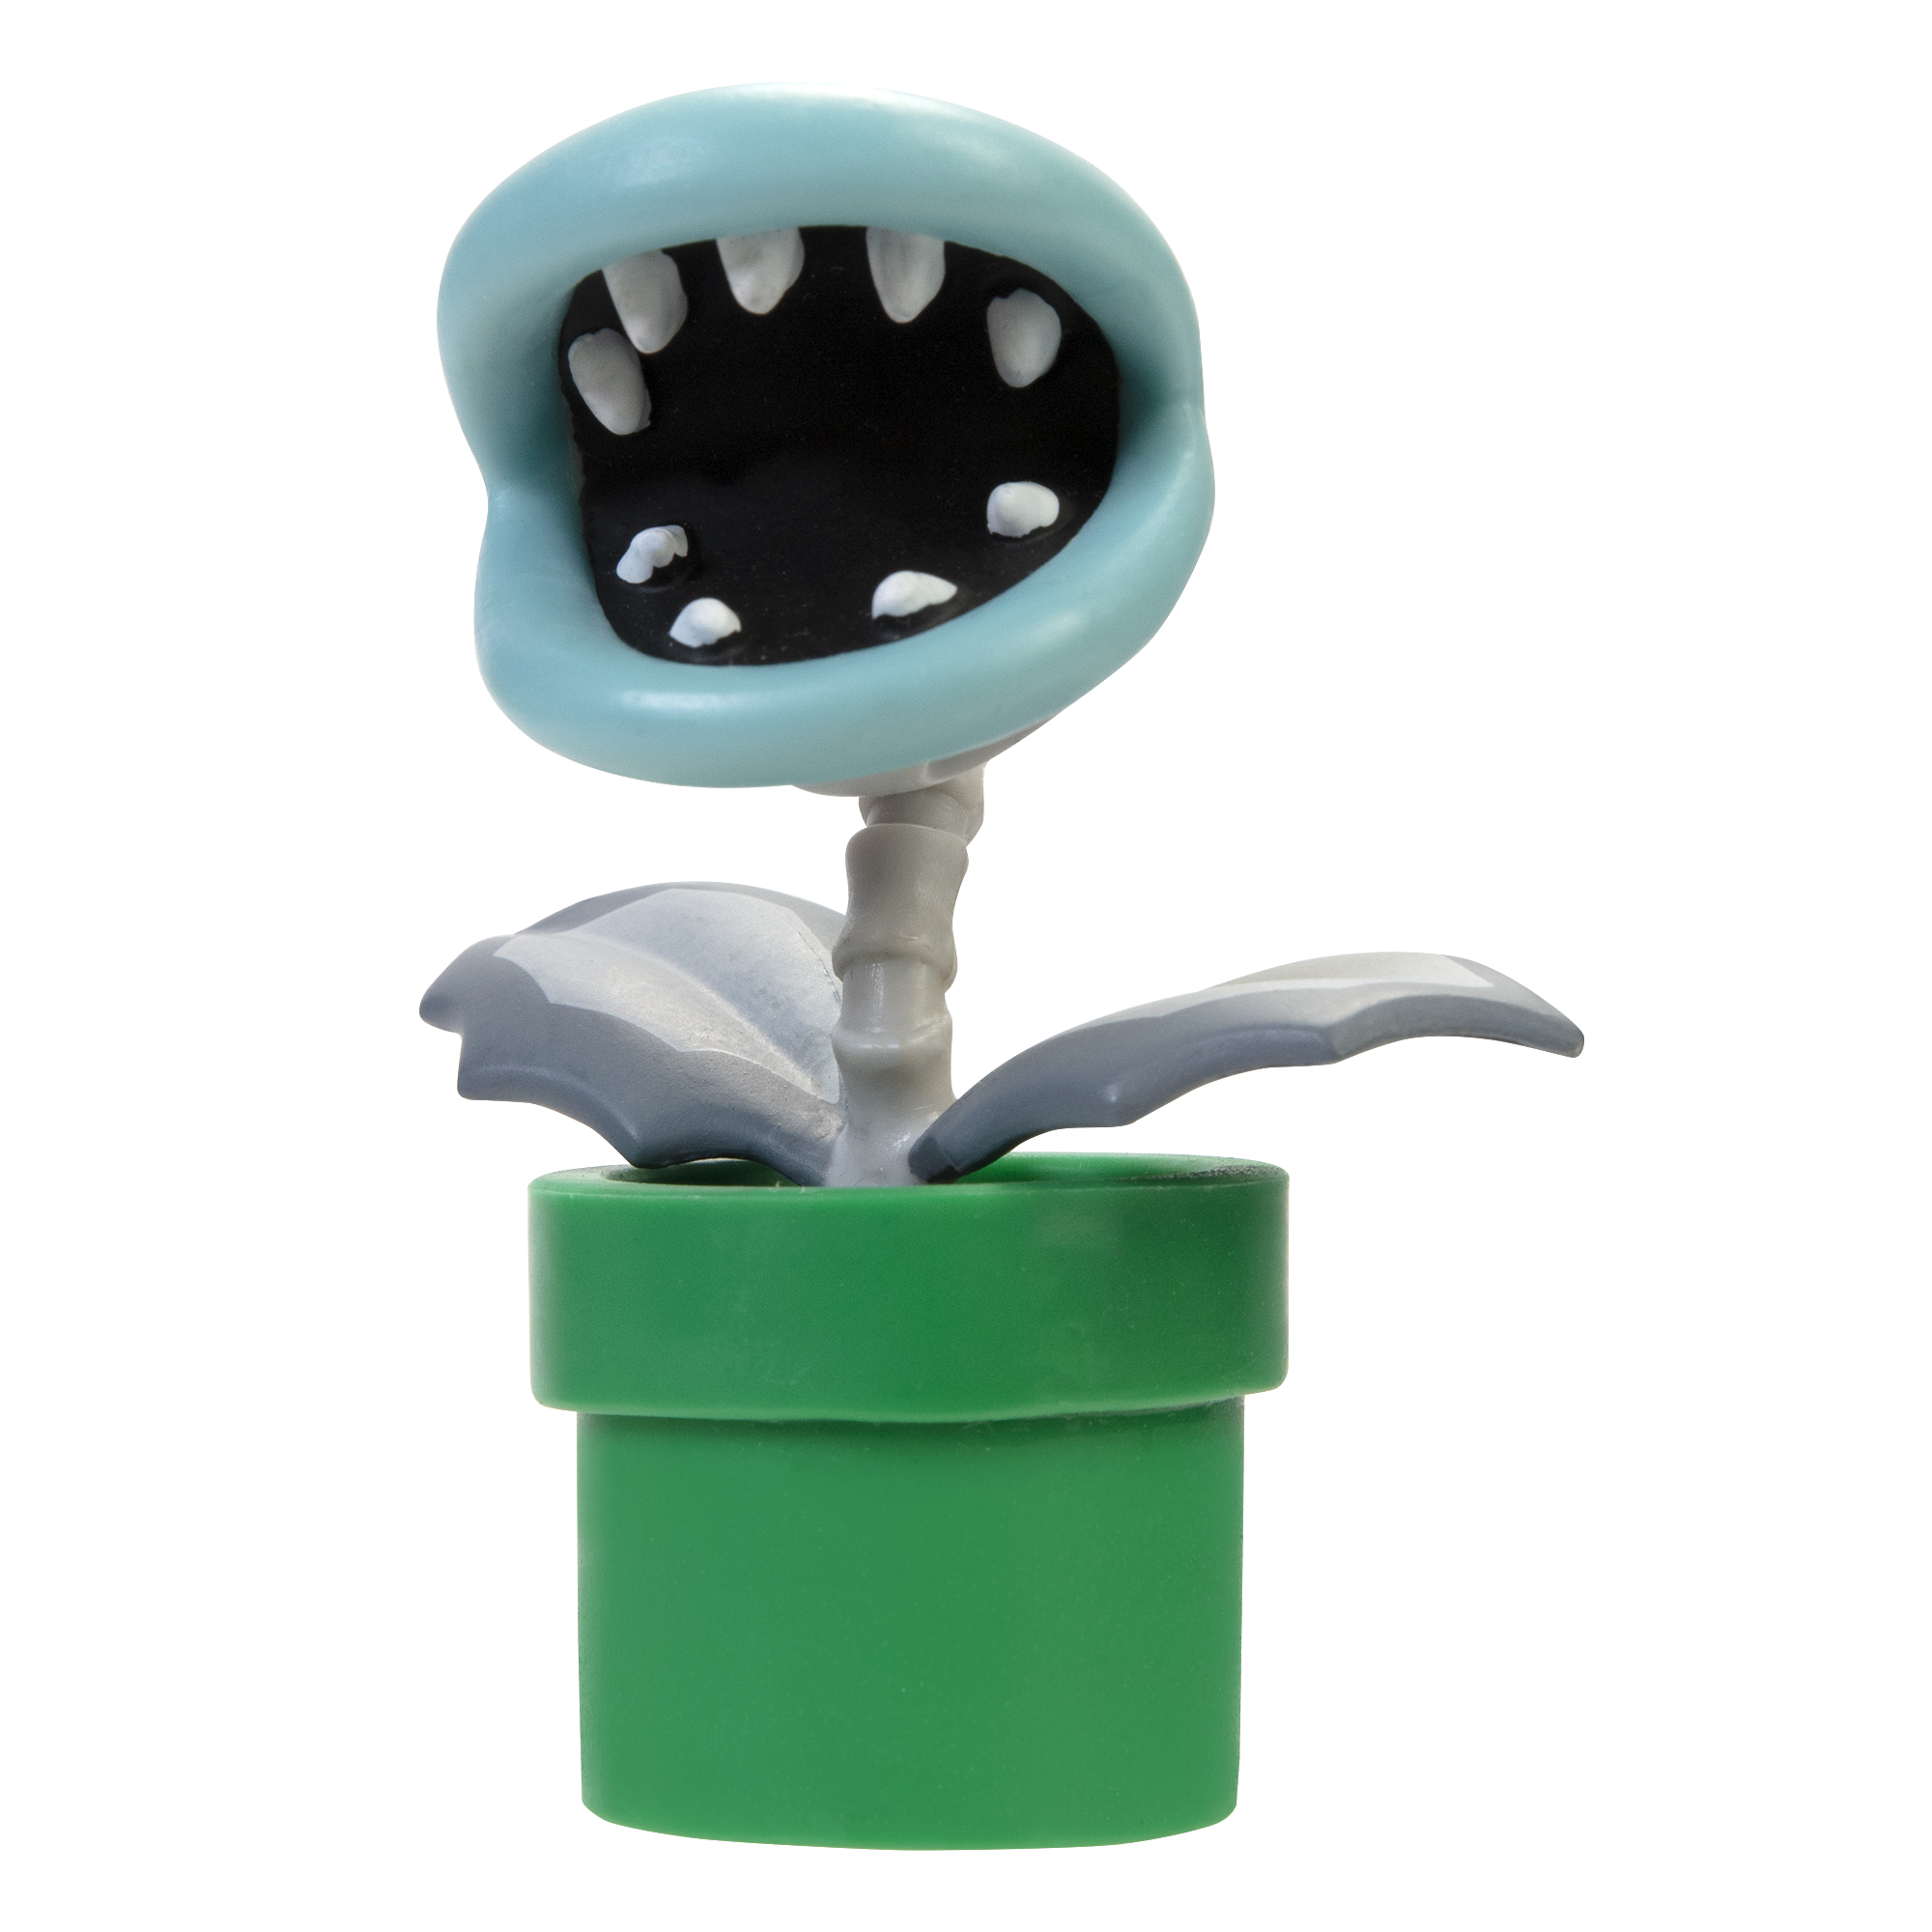 Super Mario Articulated Action Figure 2.5″ Bone Piranha Plant